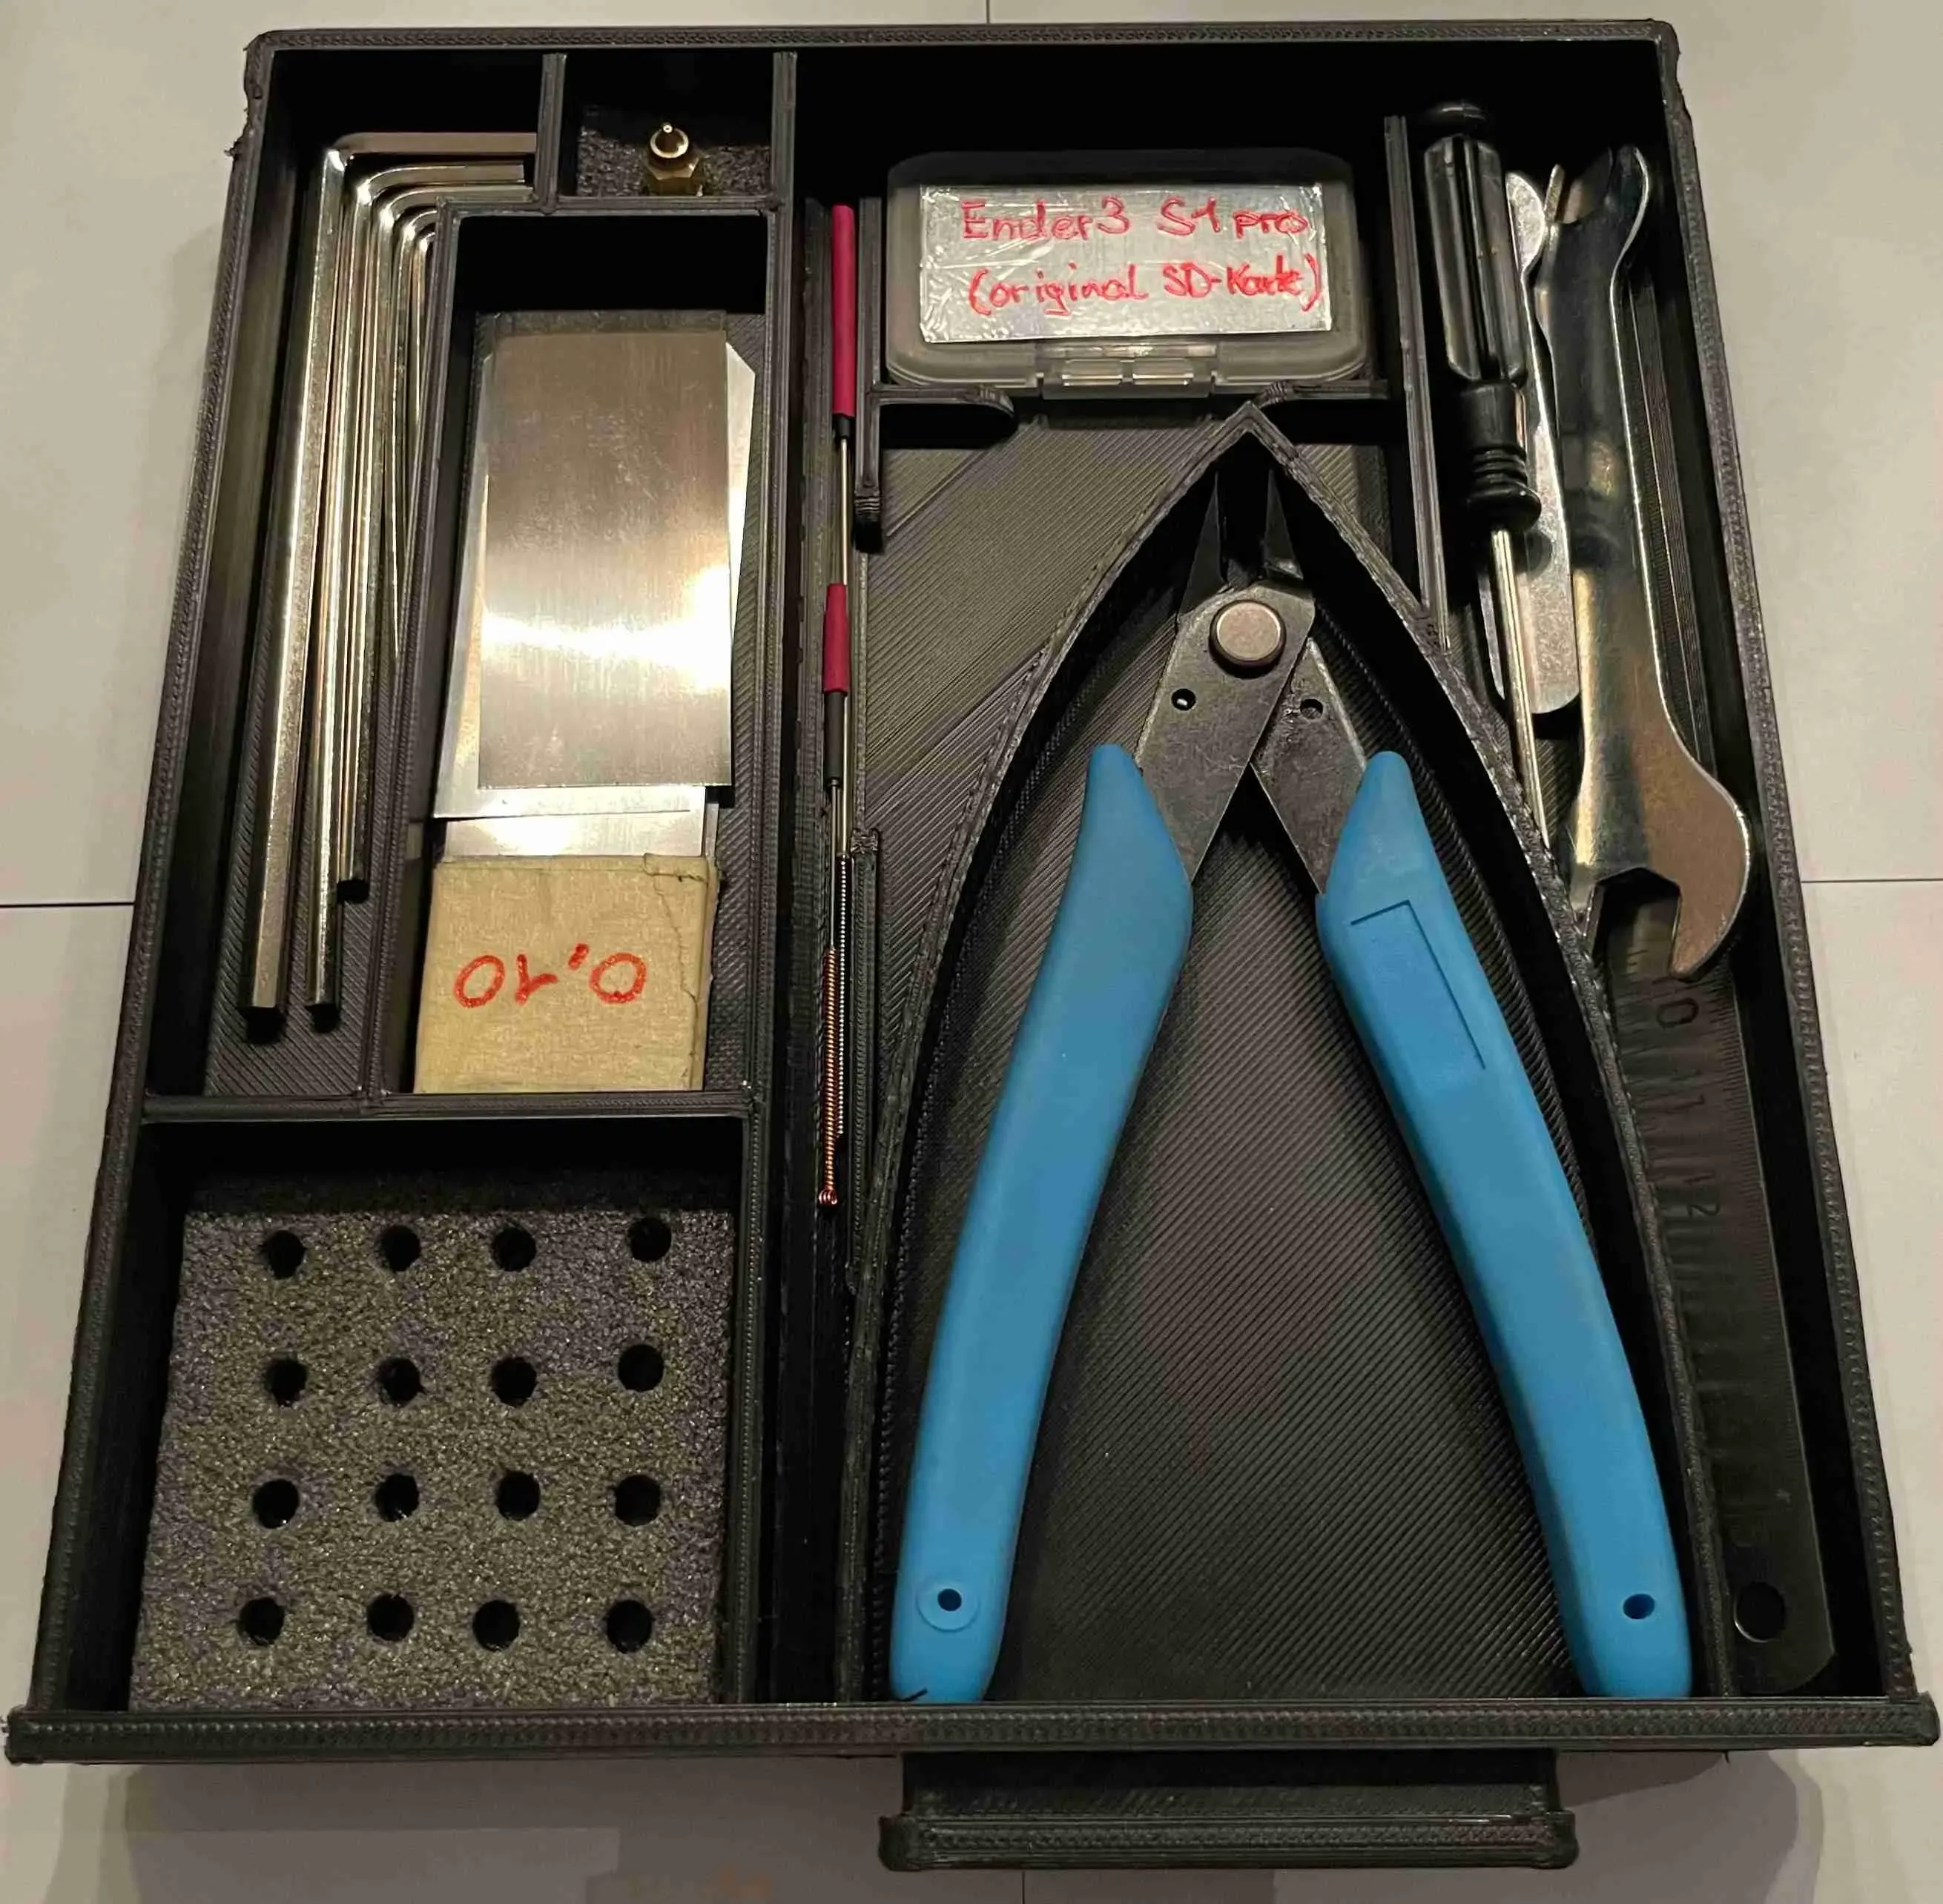 Tool drawer for Ender3 S1pro